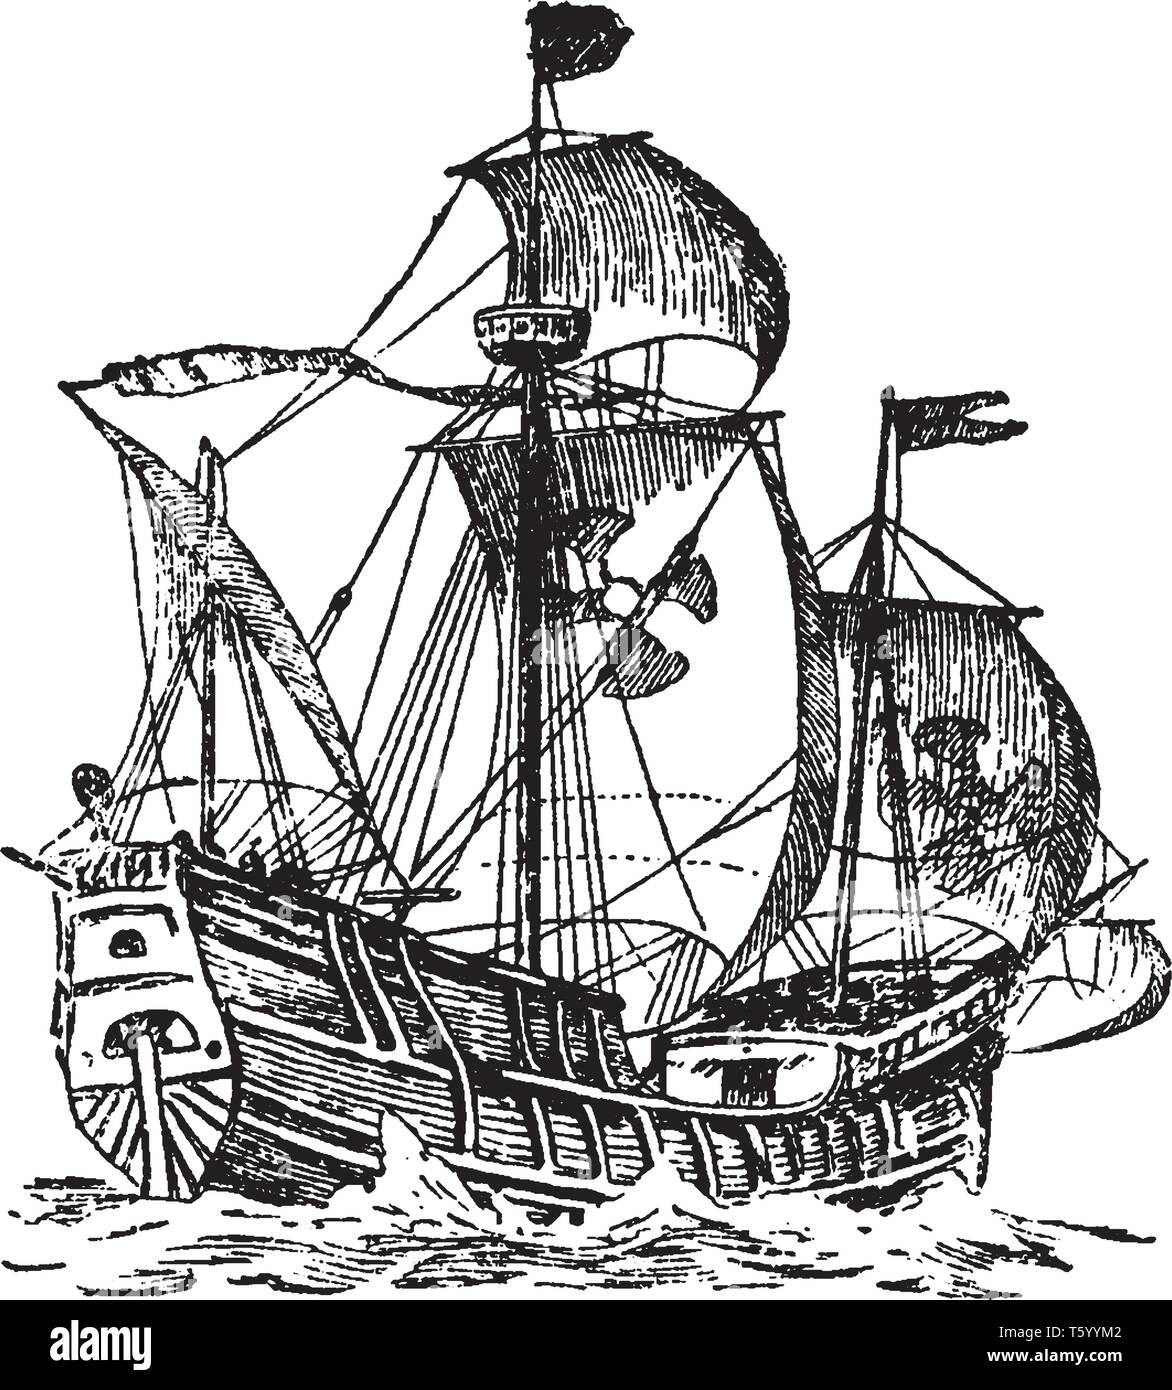 Gondole est une petite embarcation longue et étroite avec un arc et une poupe plus connu pour son utilisation dans les canaux de Venise, vintage dessin ou gravure sur illust Illustration de Vecteur